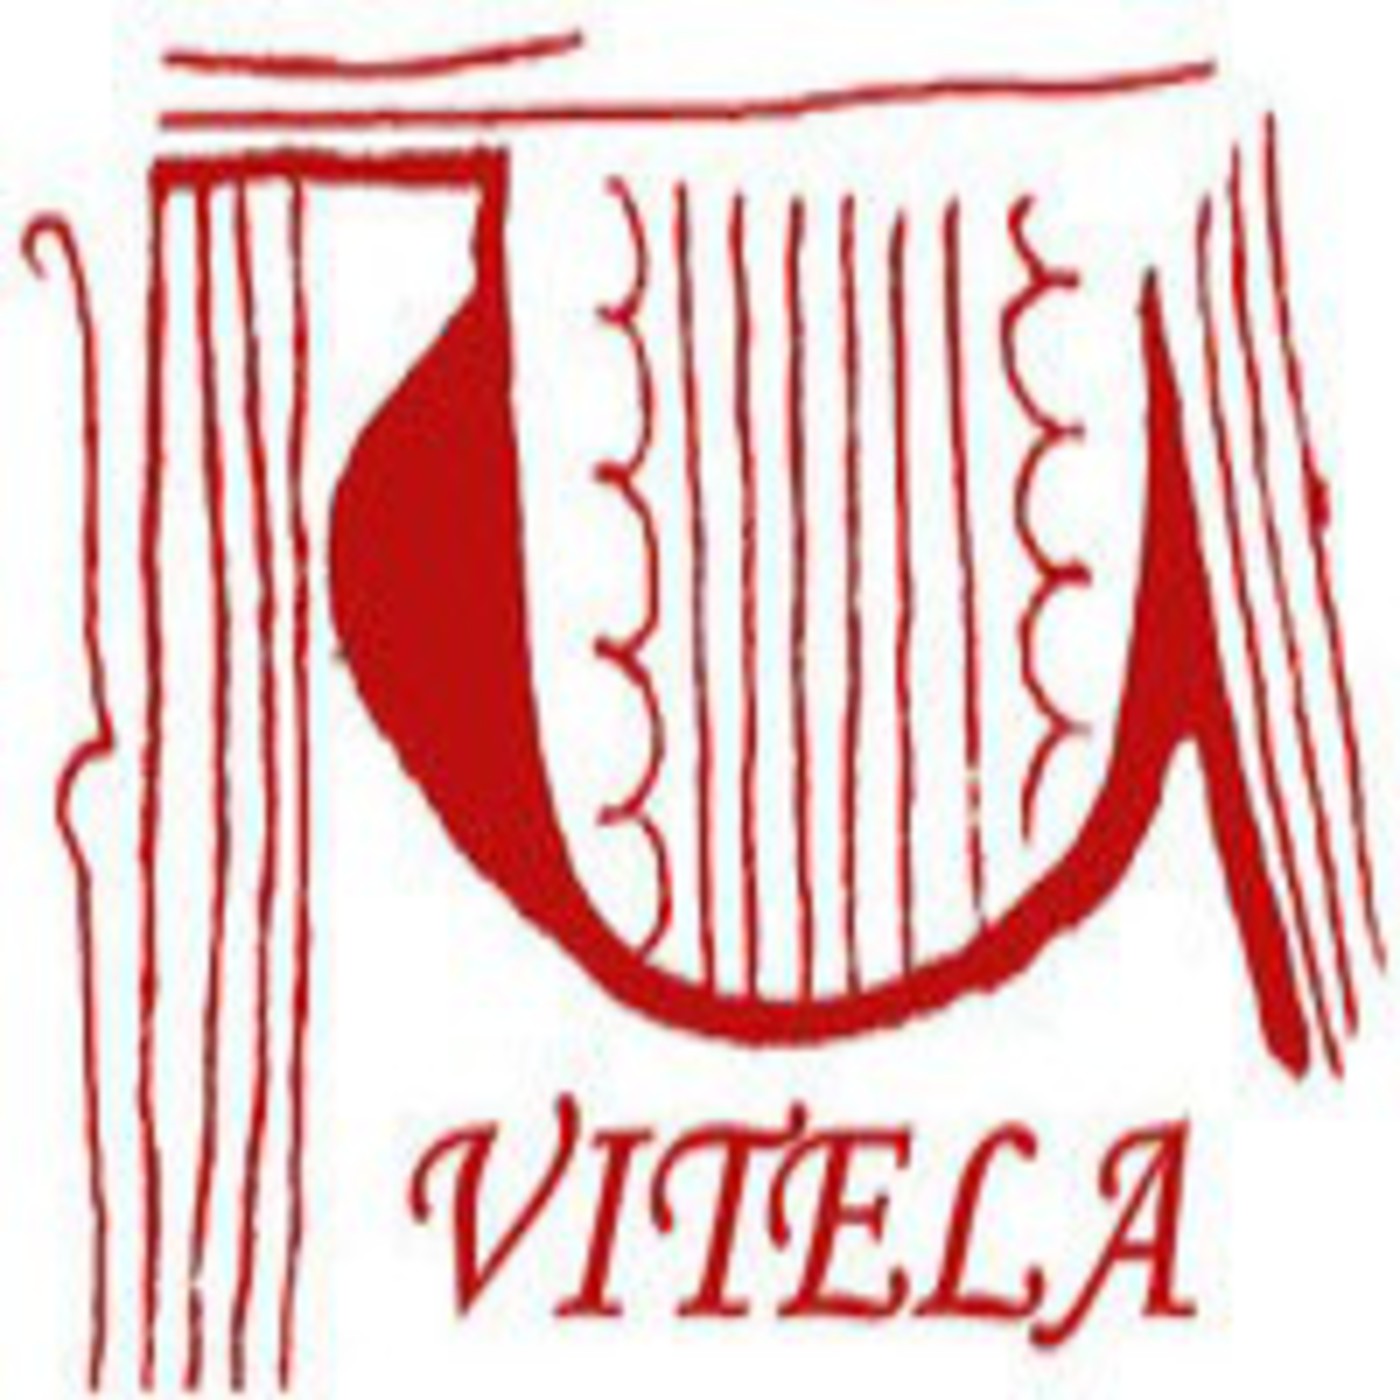 Podcast Editorial Vitela